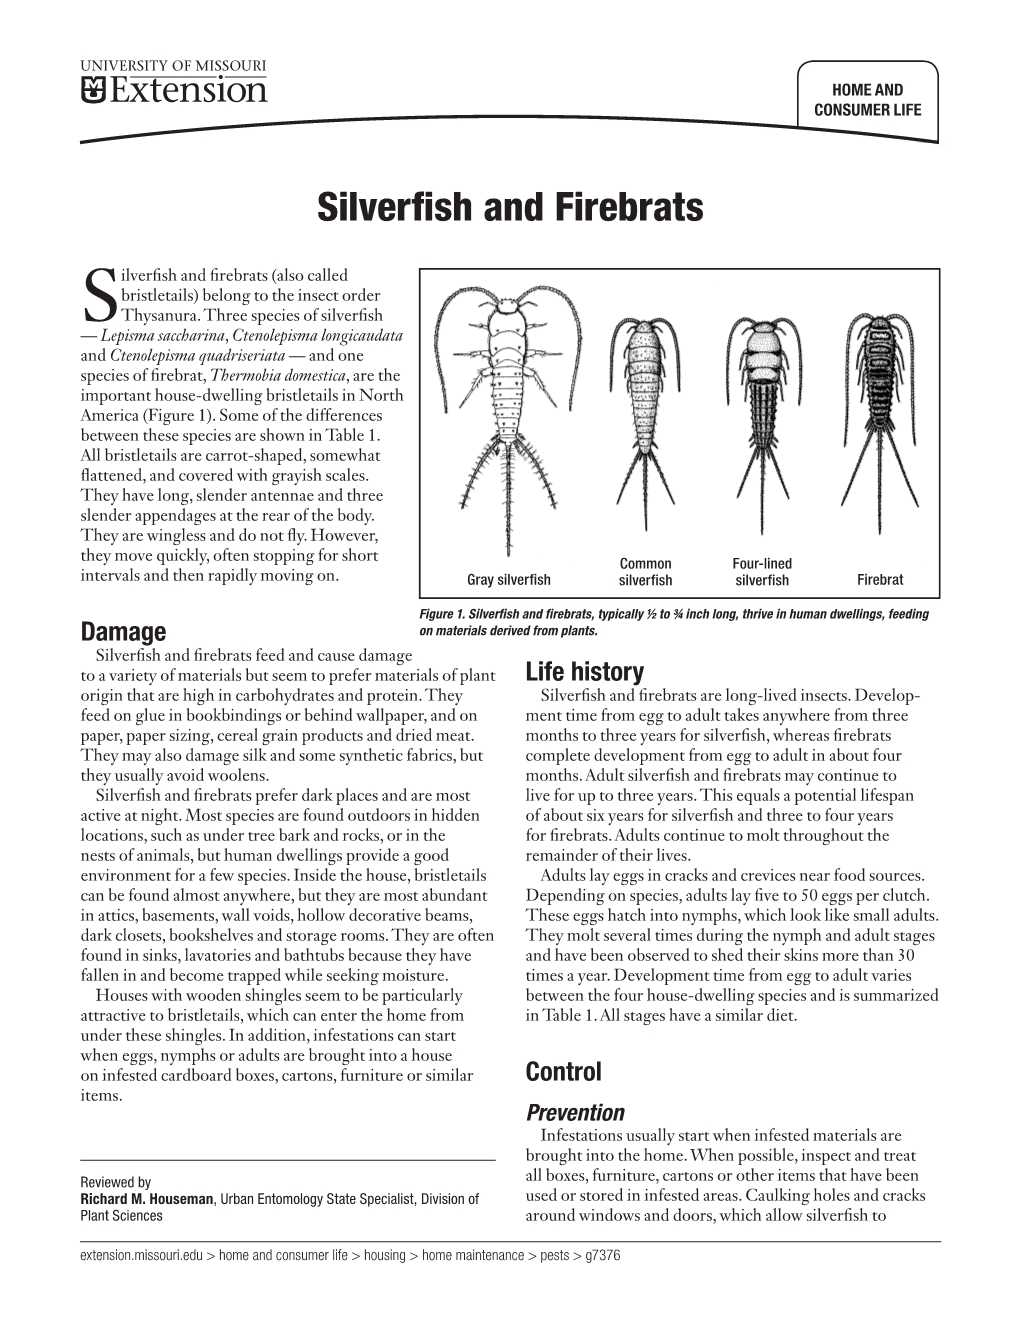 Silverfish and Firebrats